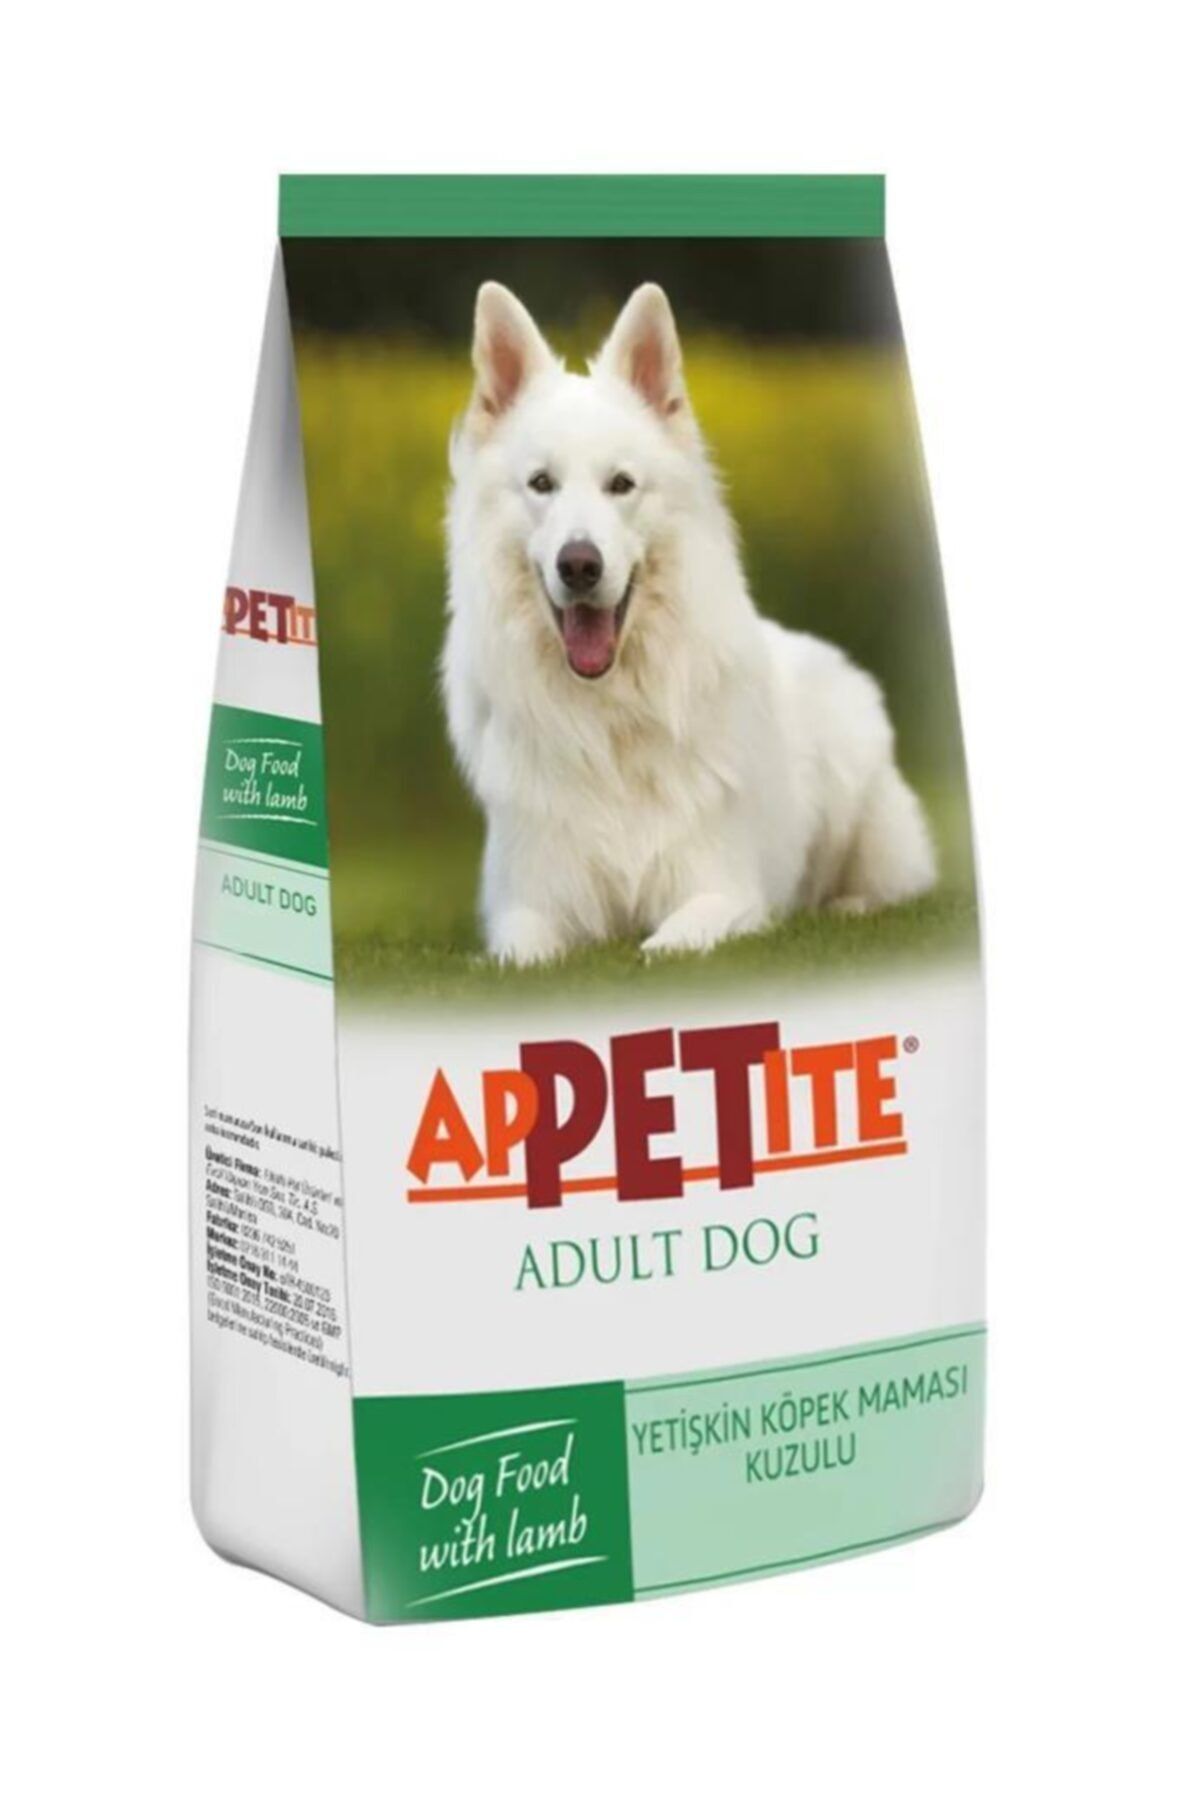 Appetite Yetişkin Köpek Maması 3 kg